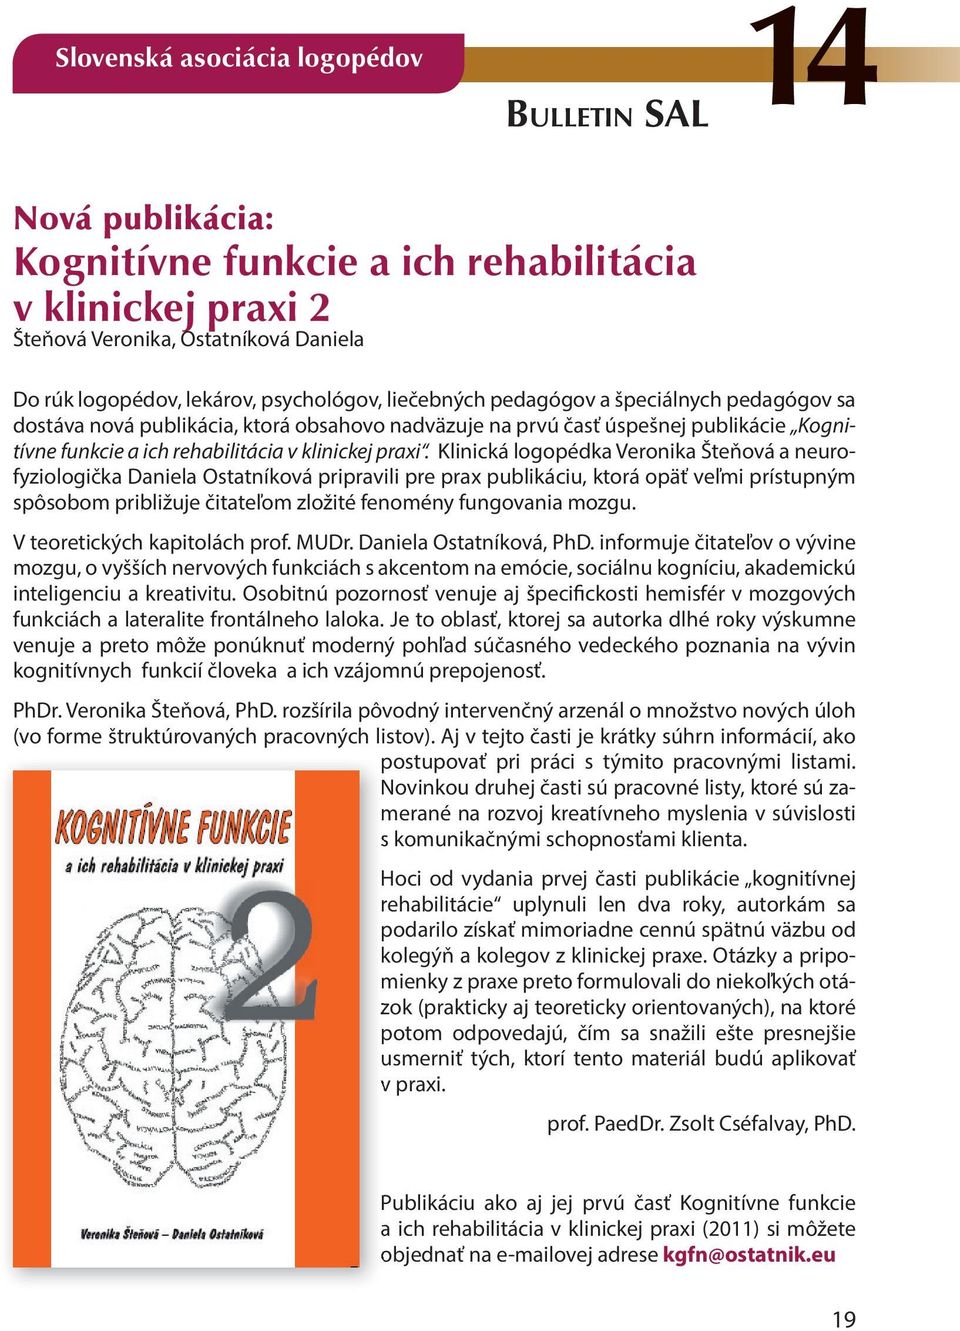 Klinická logopédka Veronika Šteňová a neurofyziologička Daniela Ostatníková pripravili pre prax publikáciu, ktorá opäť veľmi prístupným spôsobom približuje čitateľom zložité fenomény fungovania mozgu.